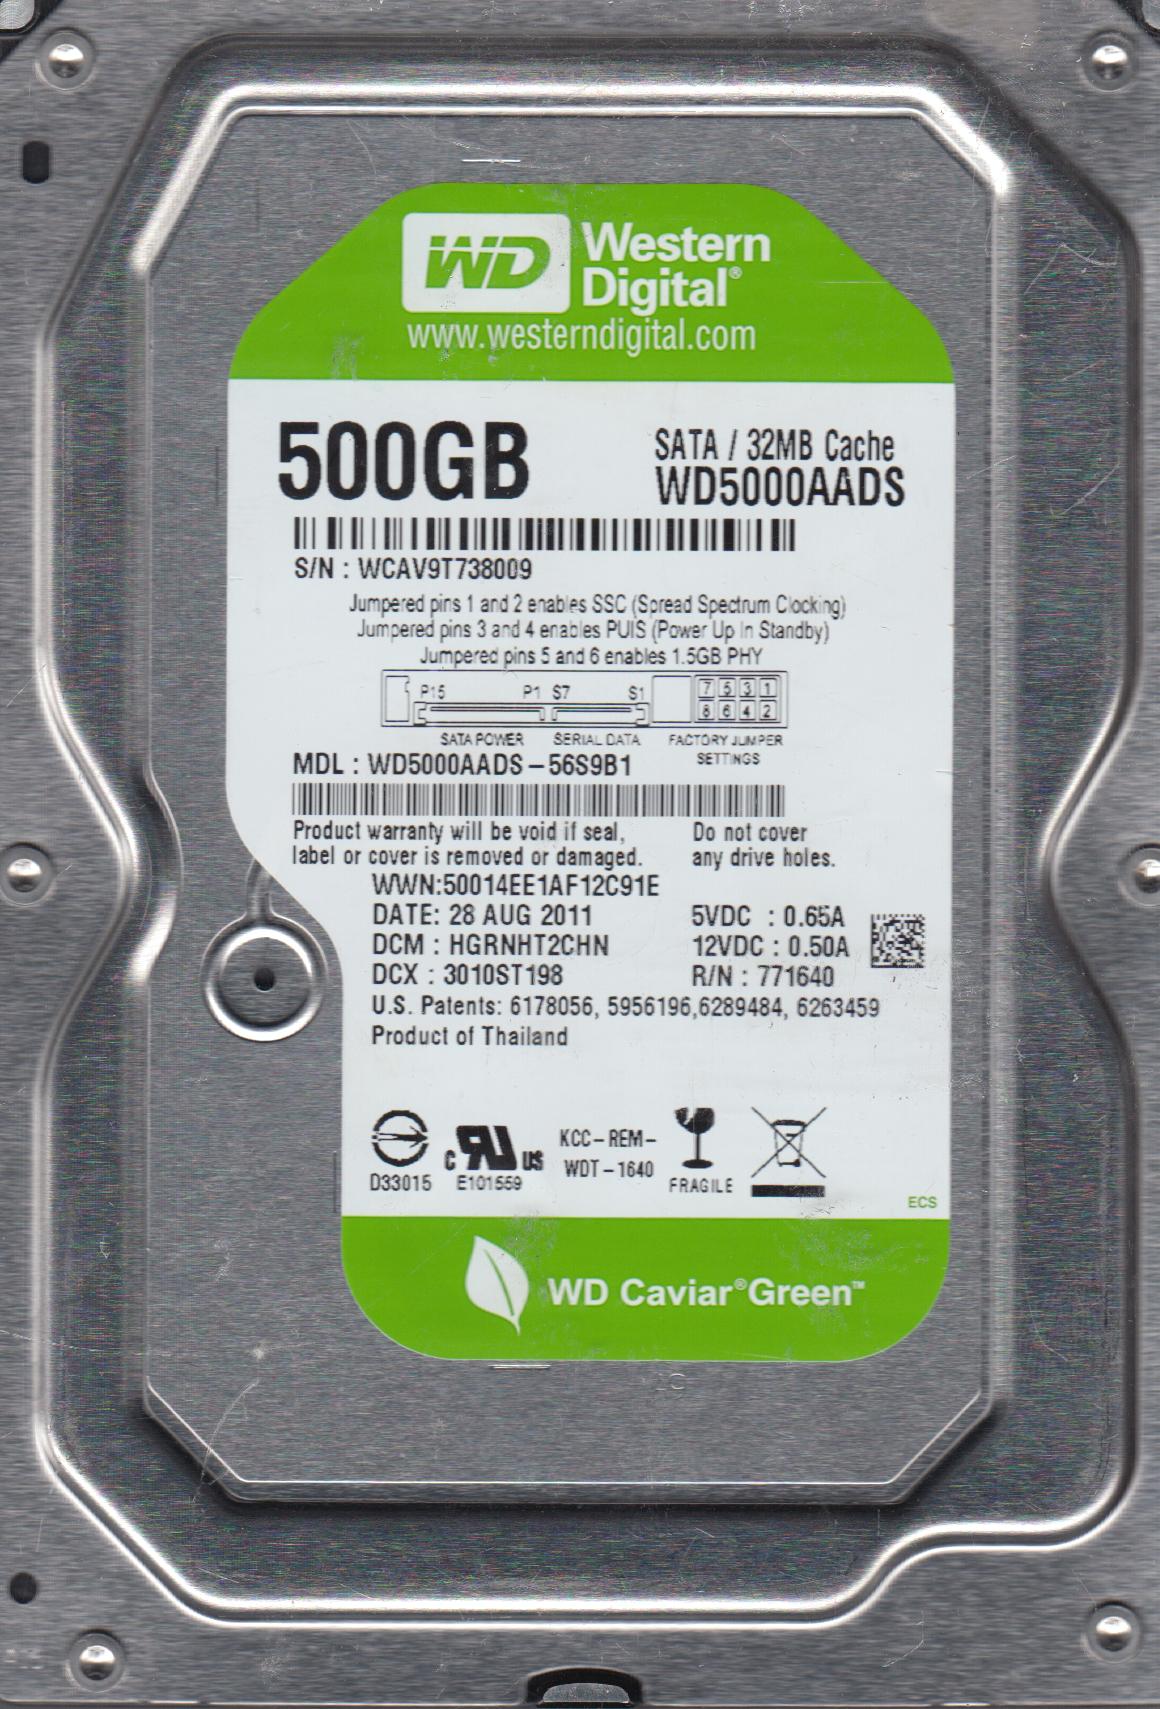 WD5000AADS-56S9B1, DCM HGRNHT2CHN, Western Digital 500GB SATA 3.5 Hard Drive - image 2 of 3